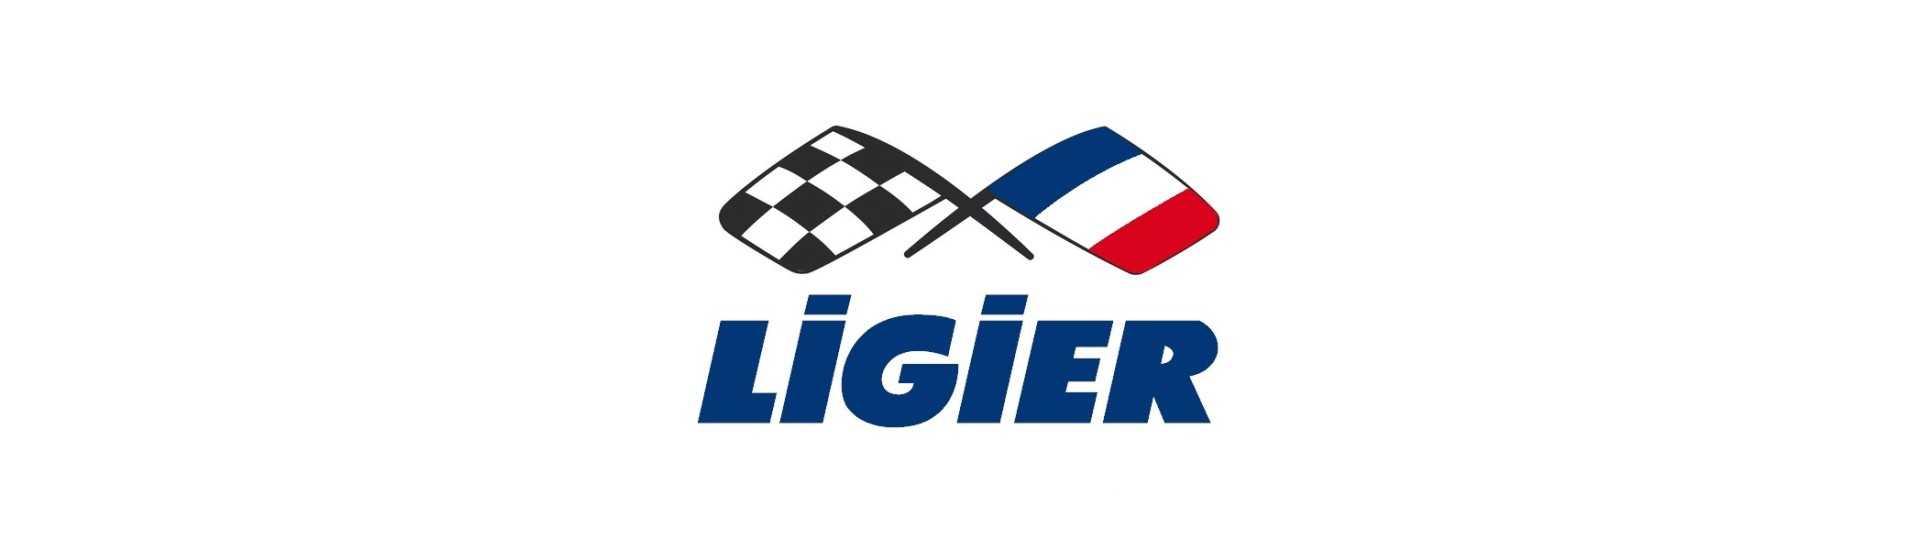 Bodywork al miglior prezzo per auto senza permesso Ligier